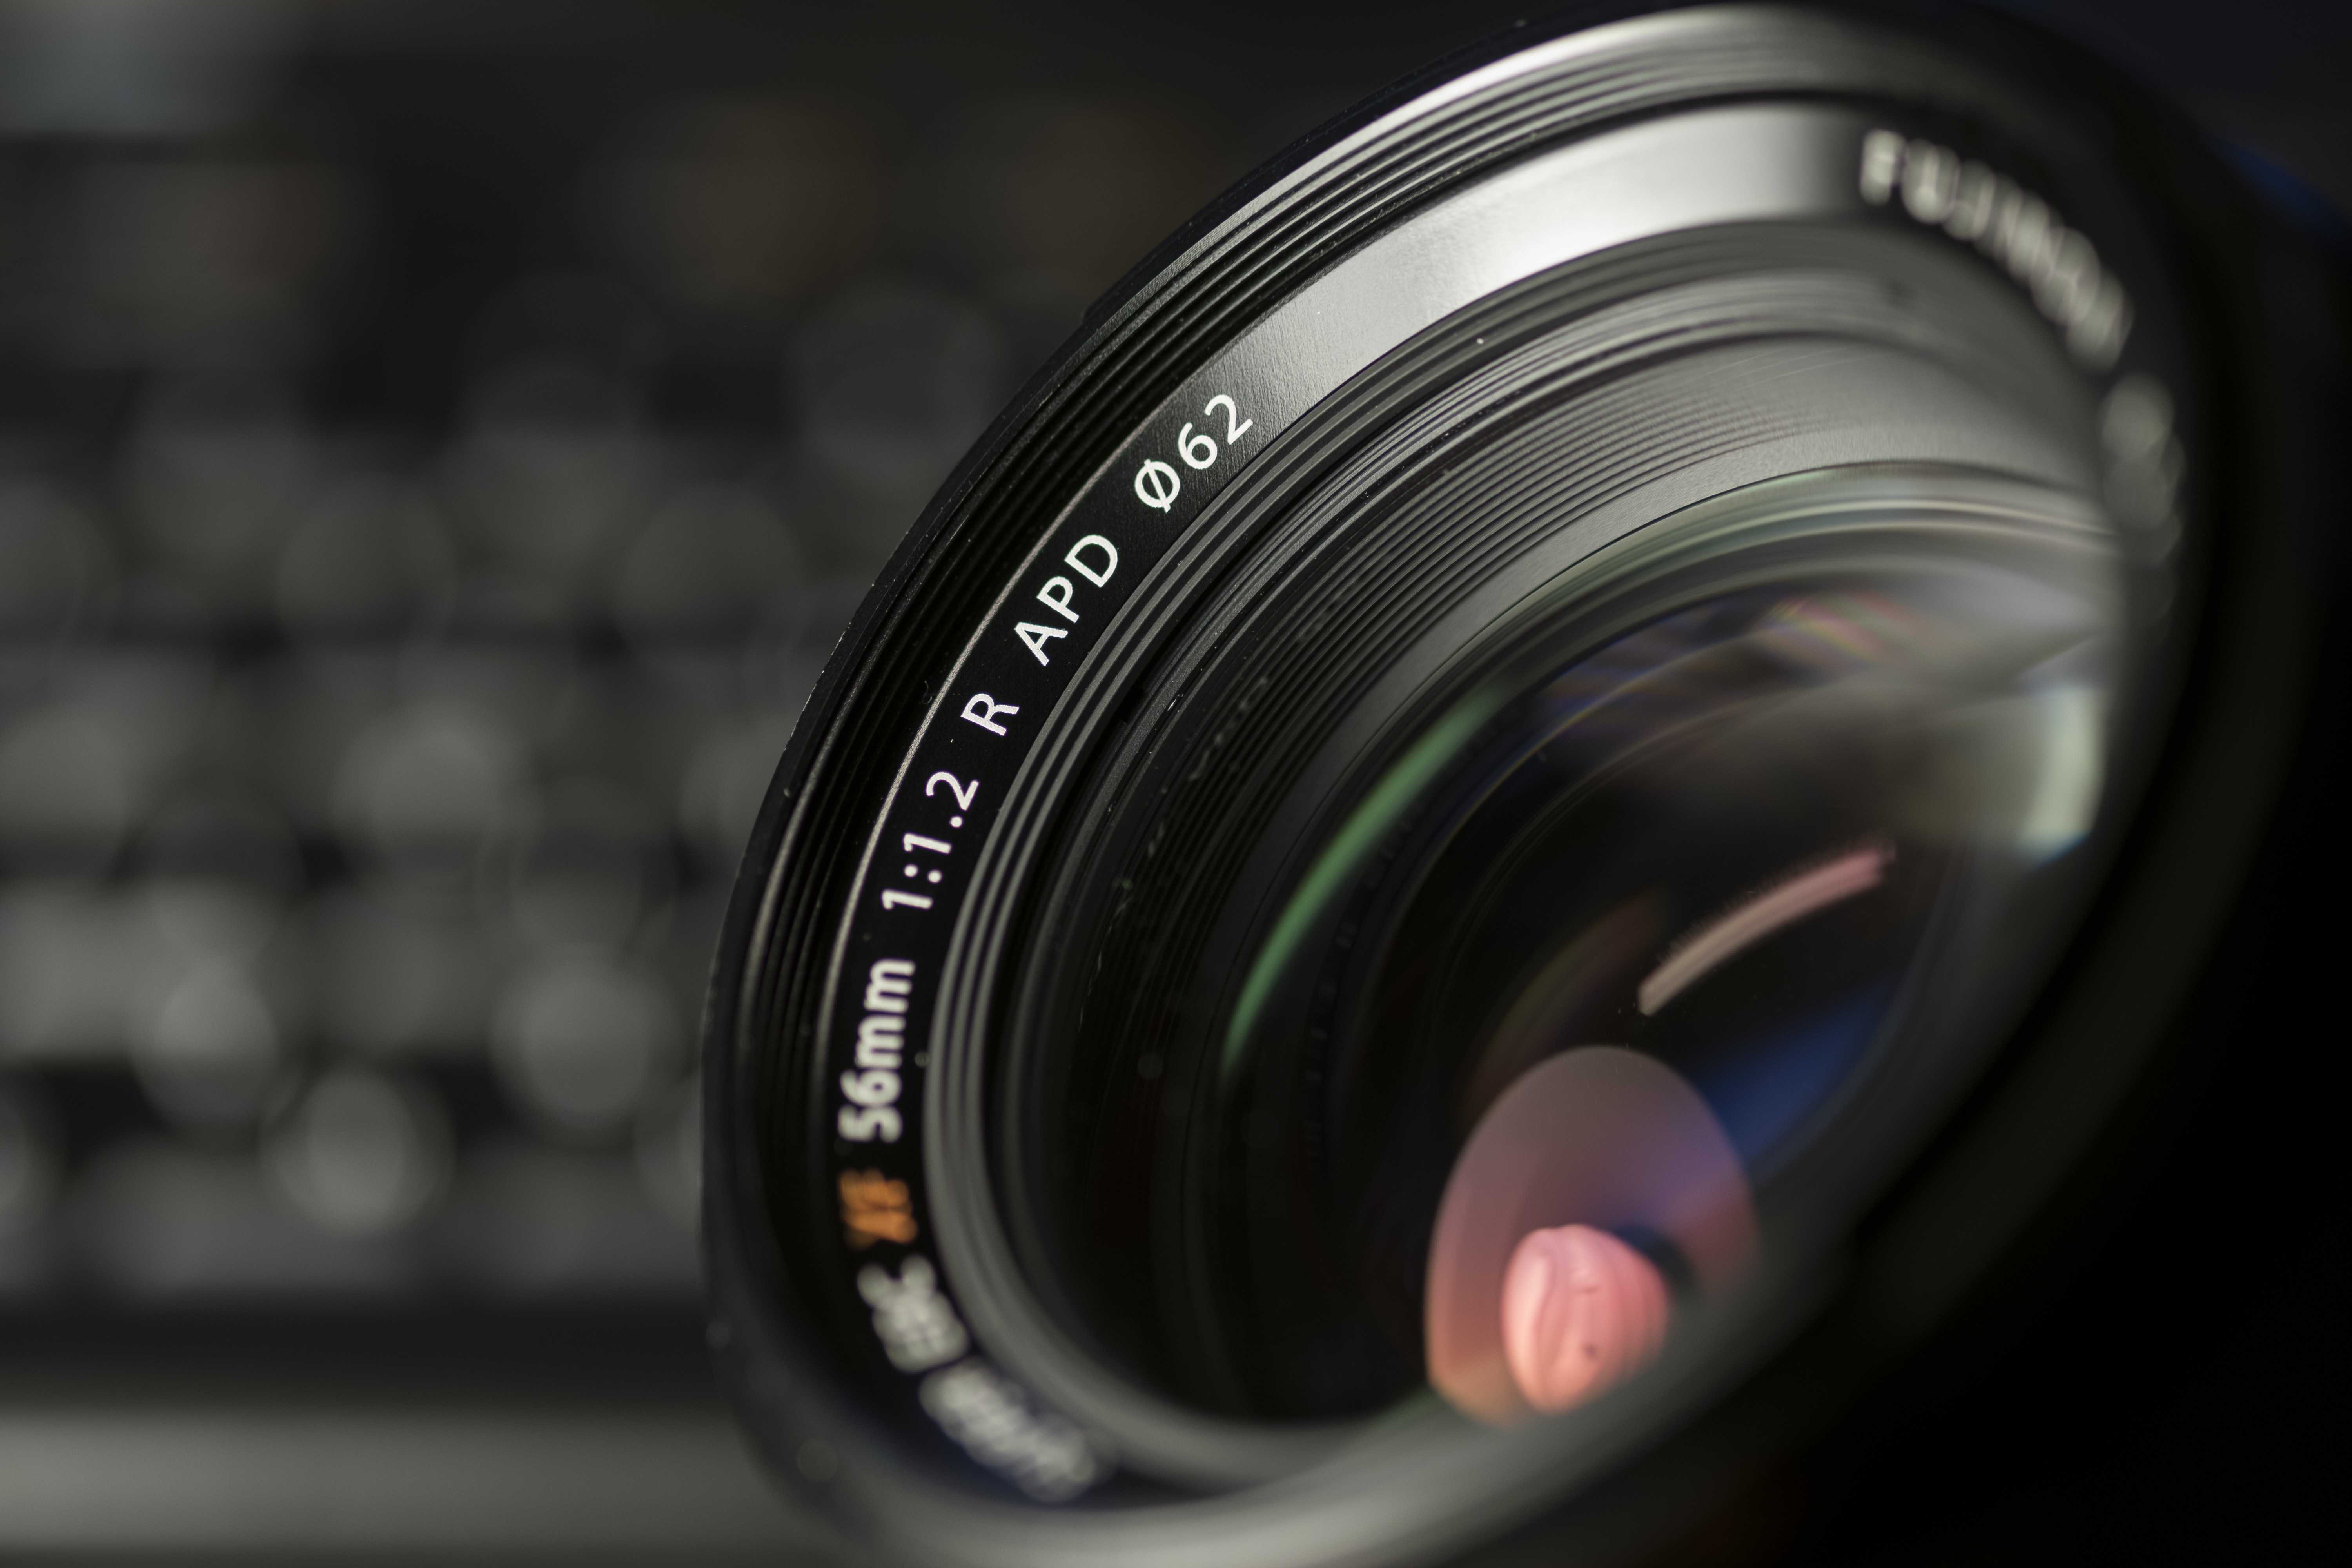 Объективы для фото и видеокамер fujifilm xf 60mm f/2.4 r macro купить за 39999 руб в екатеринбурге, отзывы, видео обзоры и характеристики